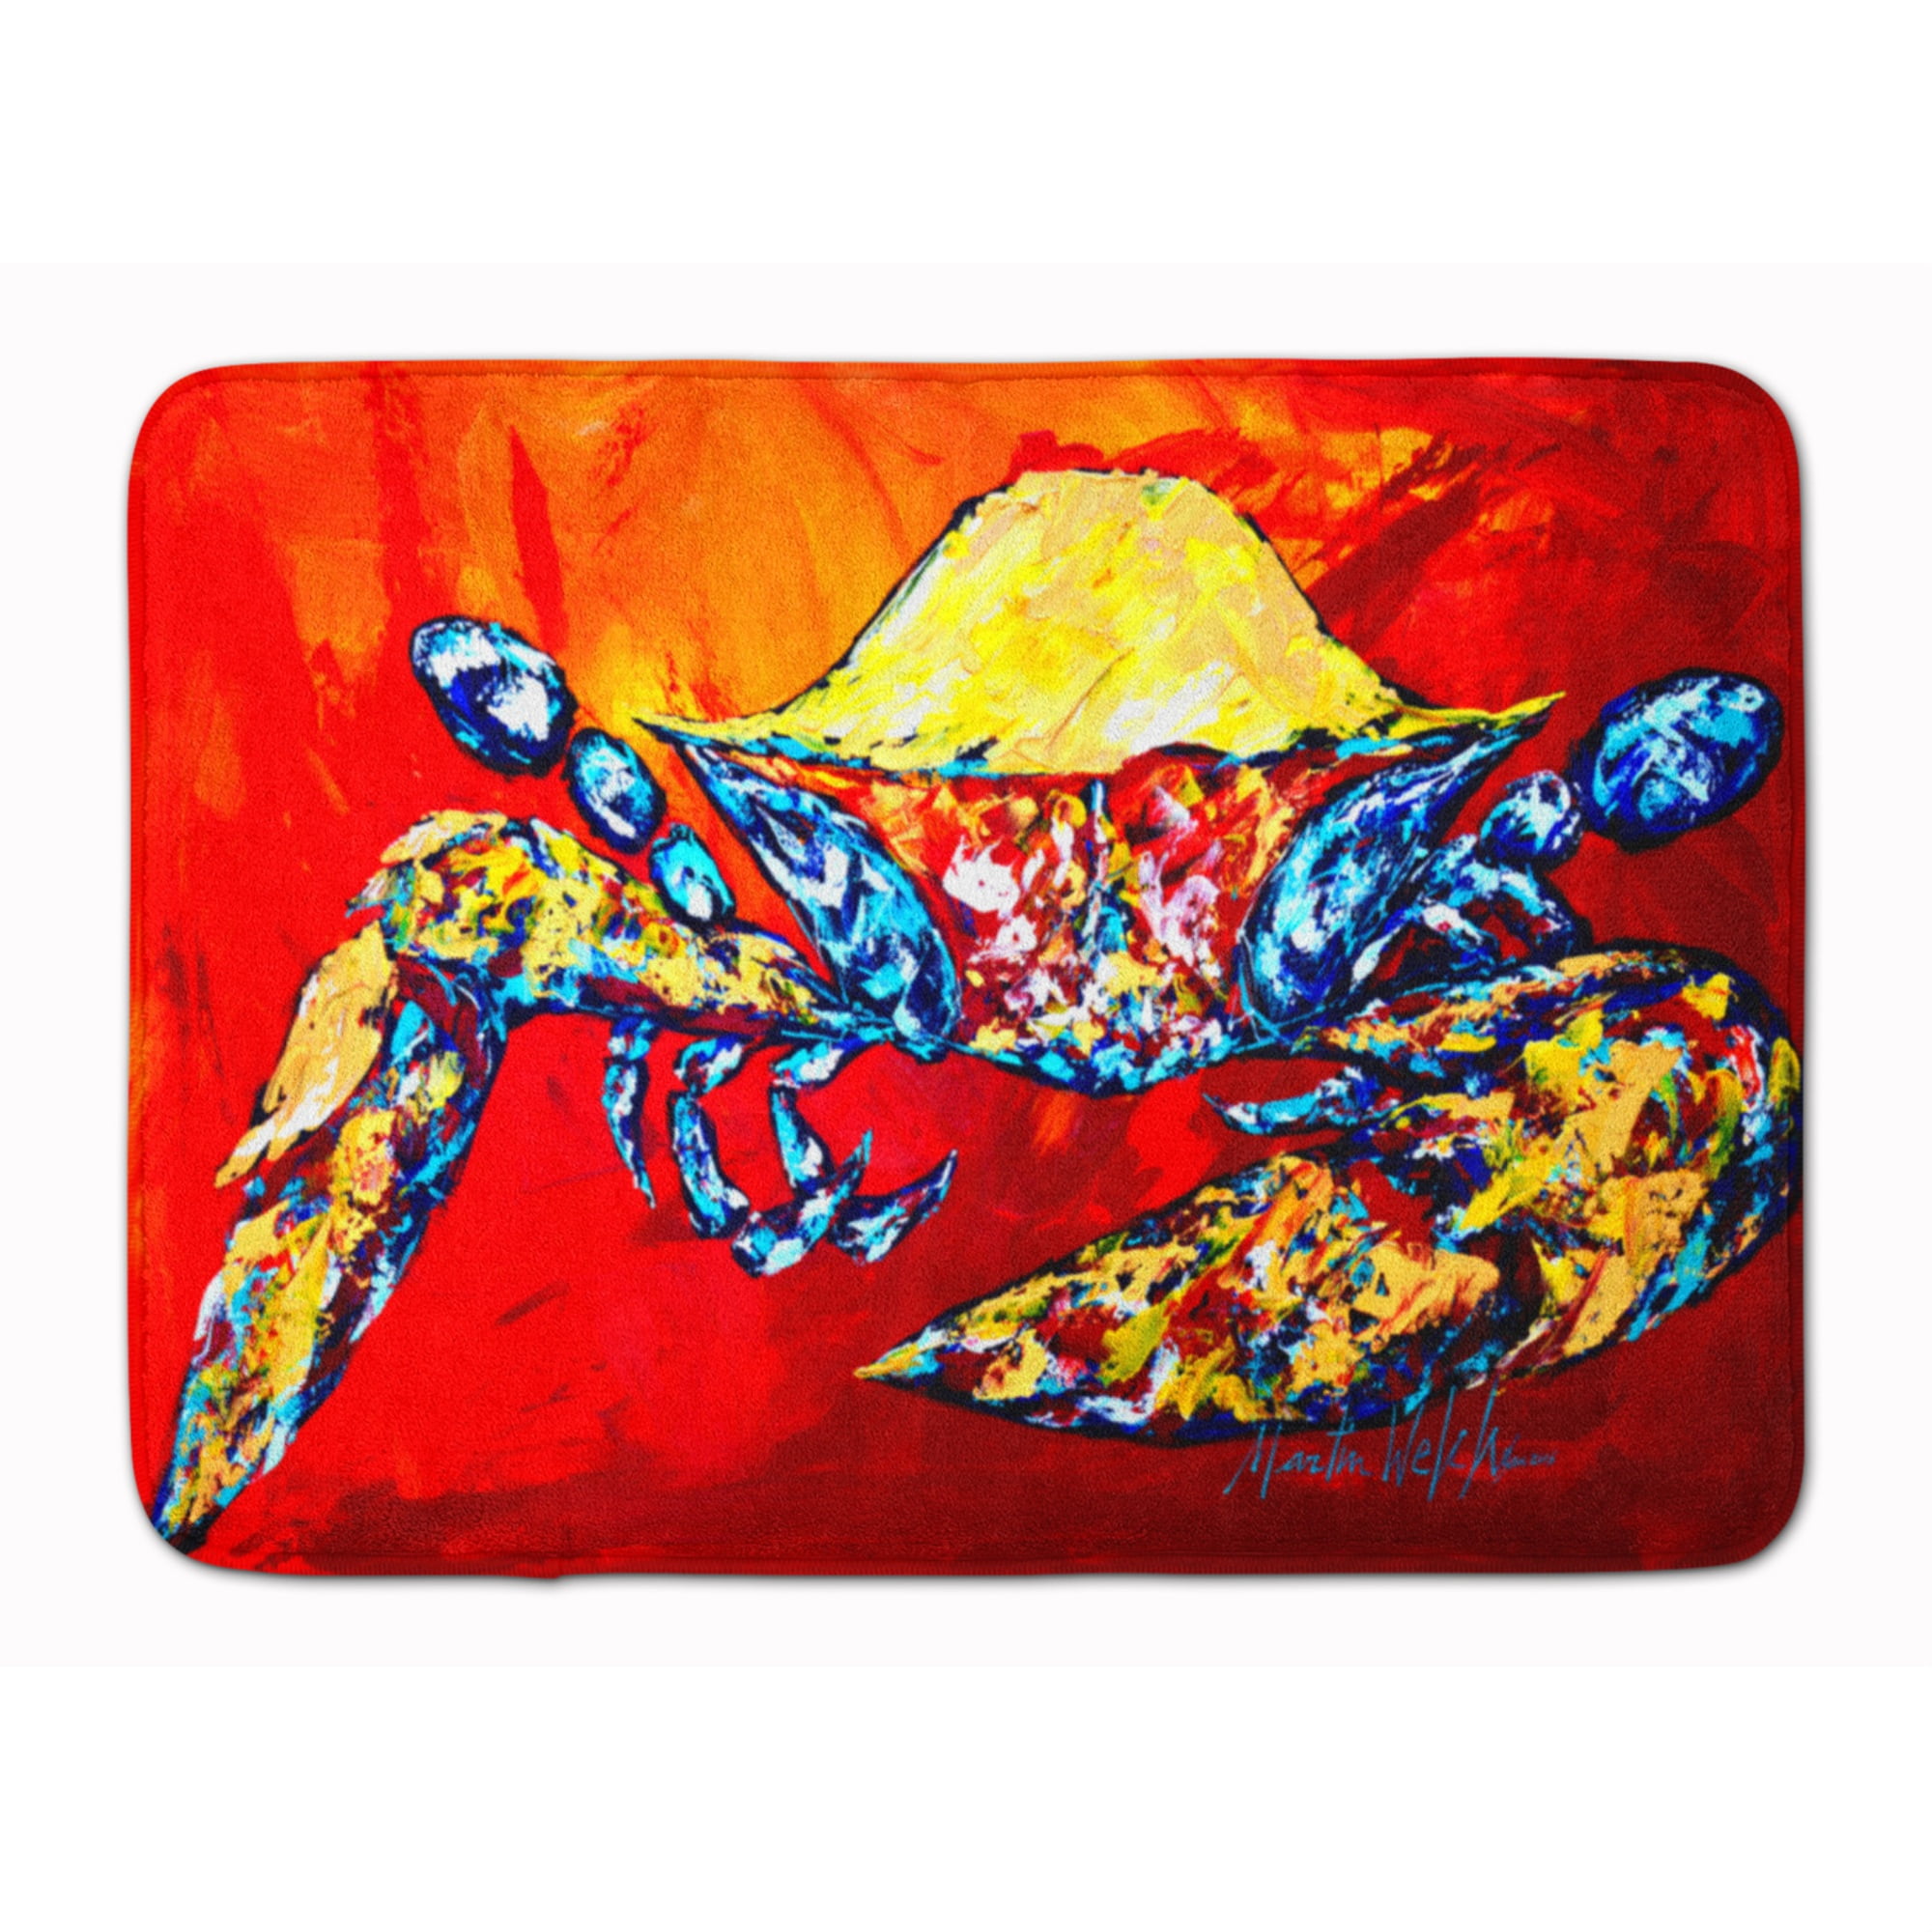 Carolines Treasures Crab Doormat 18 H x 27 W Multicolor 